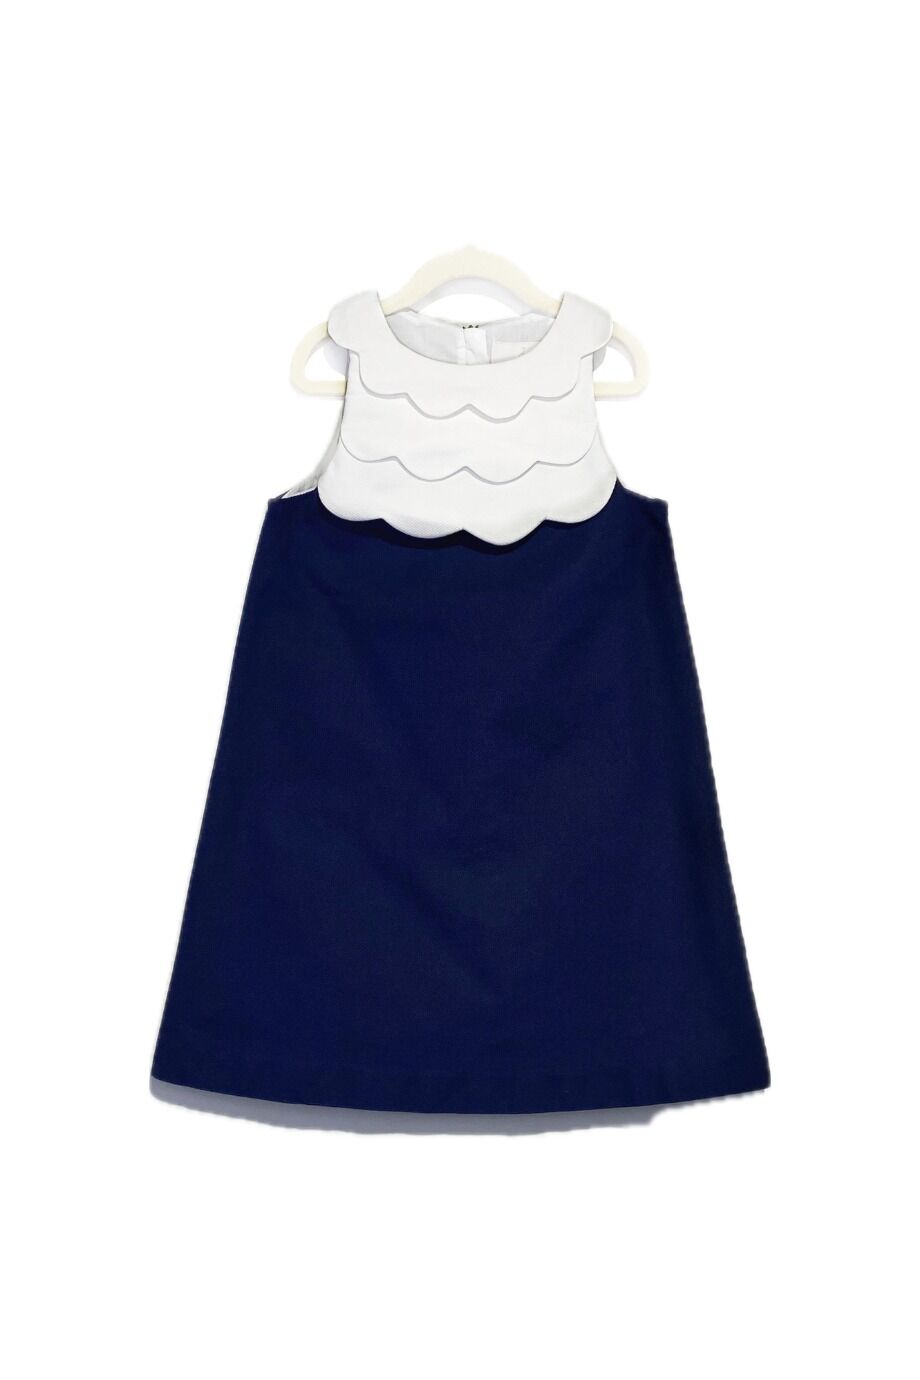 image 1 Детское платье темно-синего цвета с белой манишкой